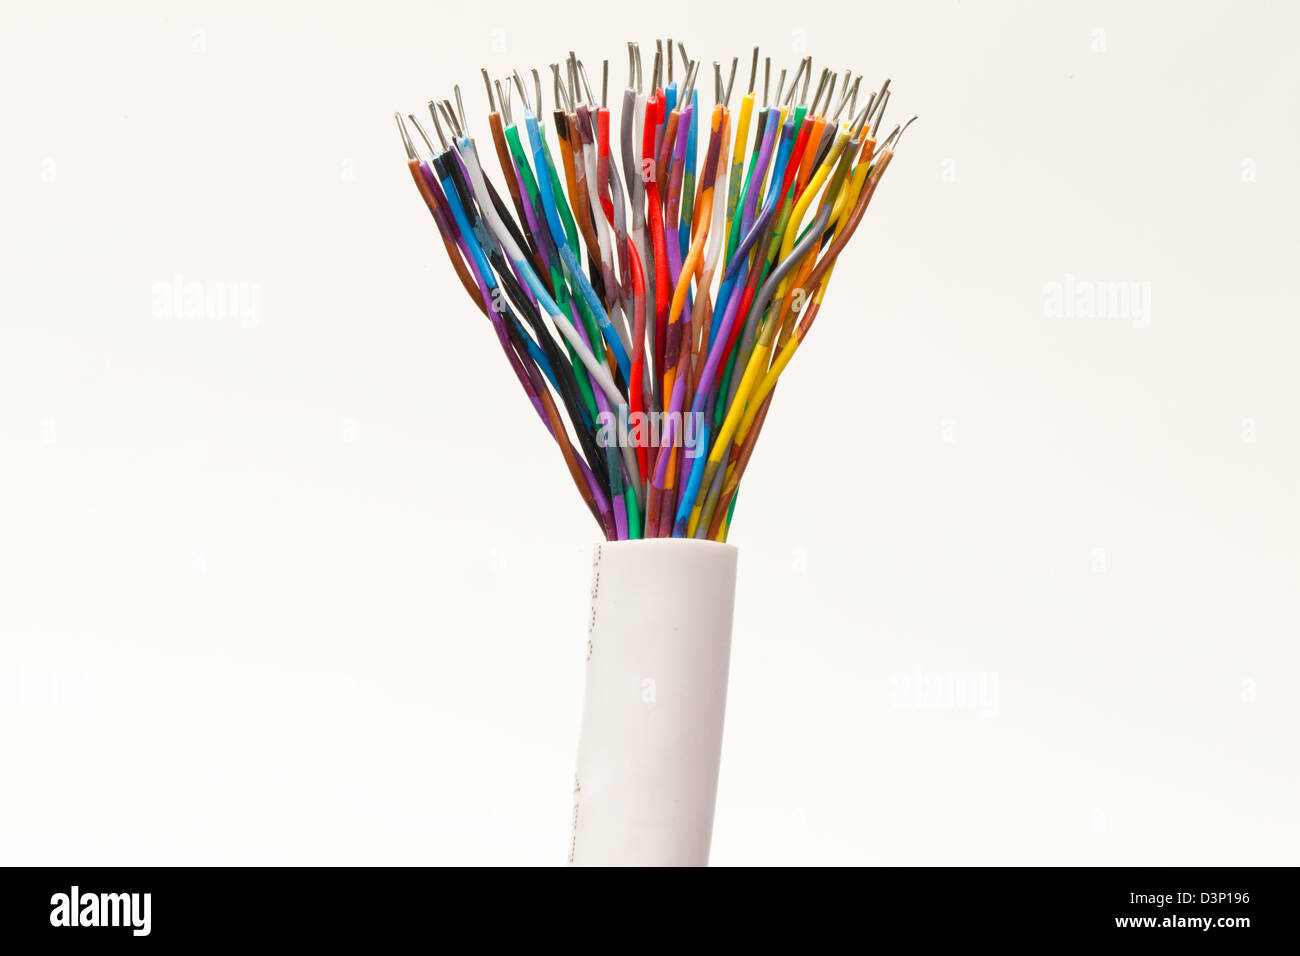 Cables-Multi-diversità di colore arcobaleno di colori misti Foto Stock